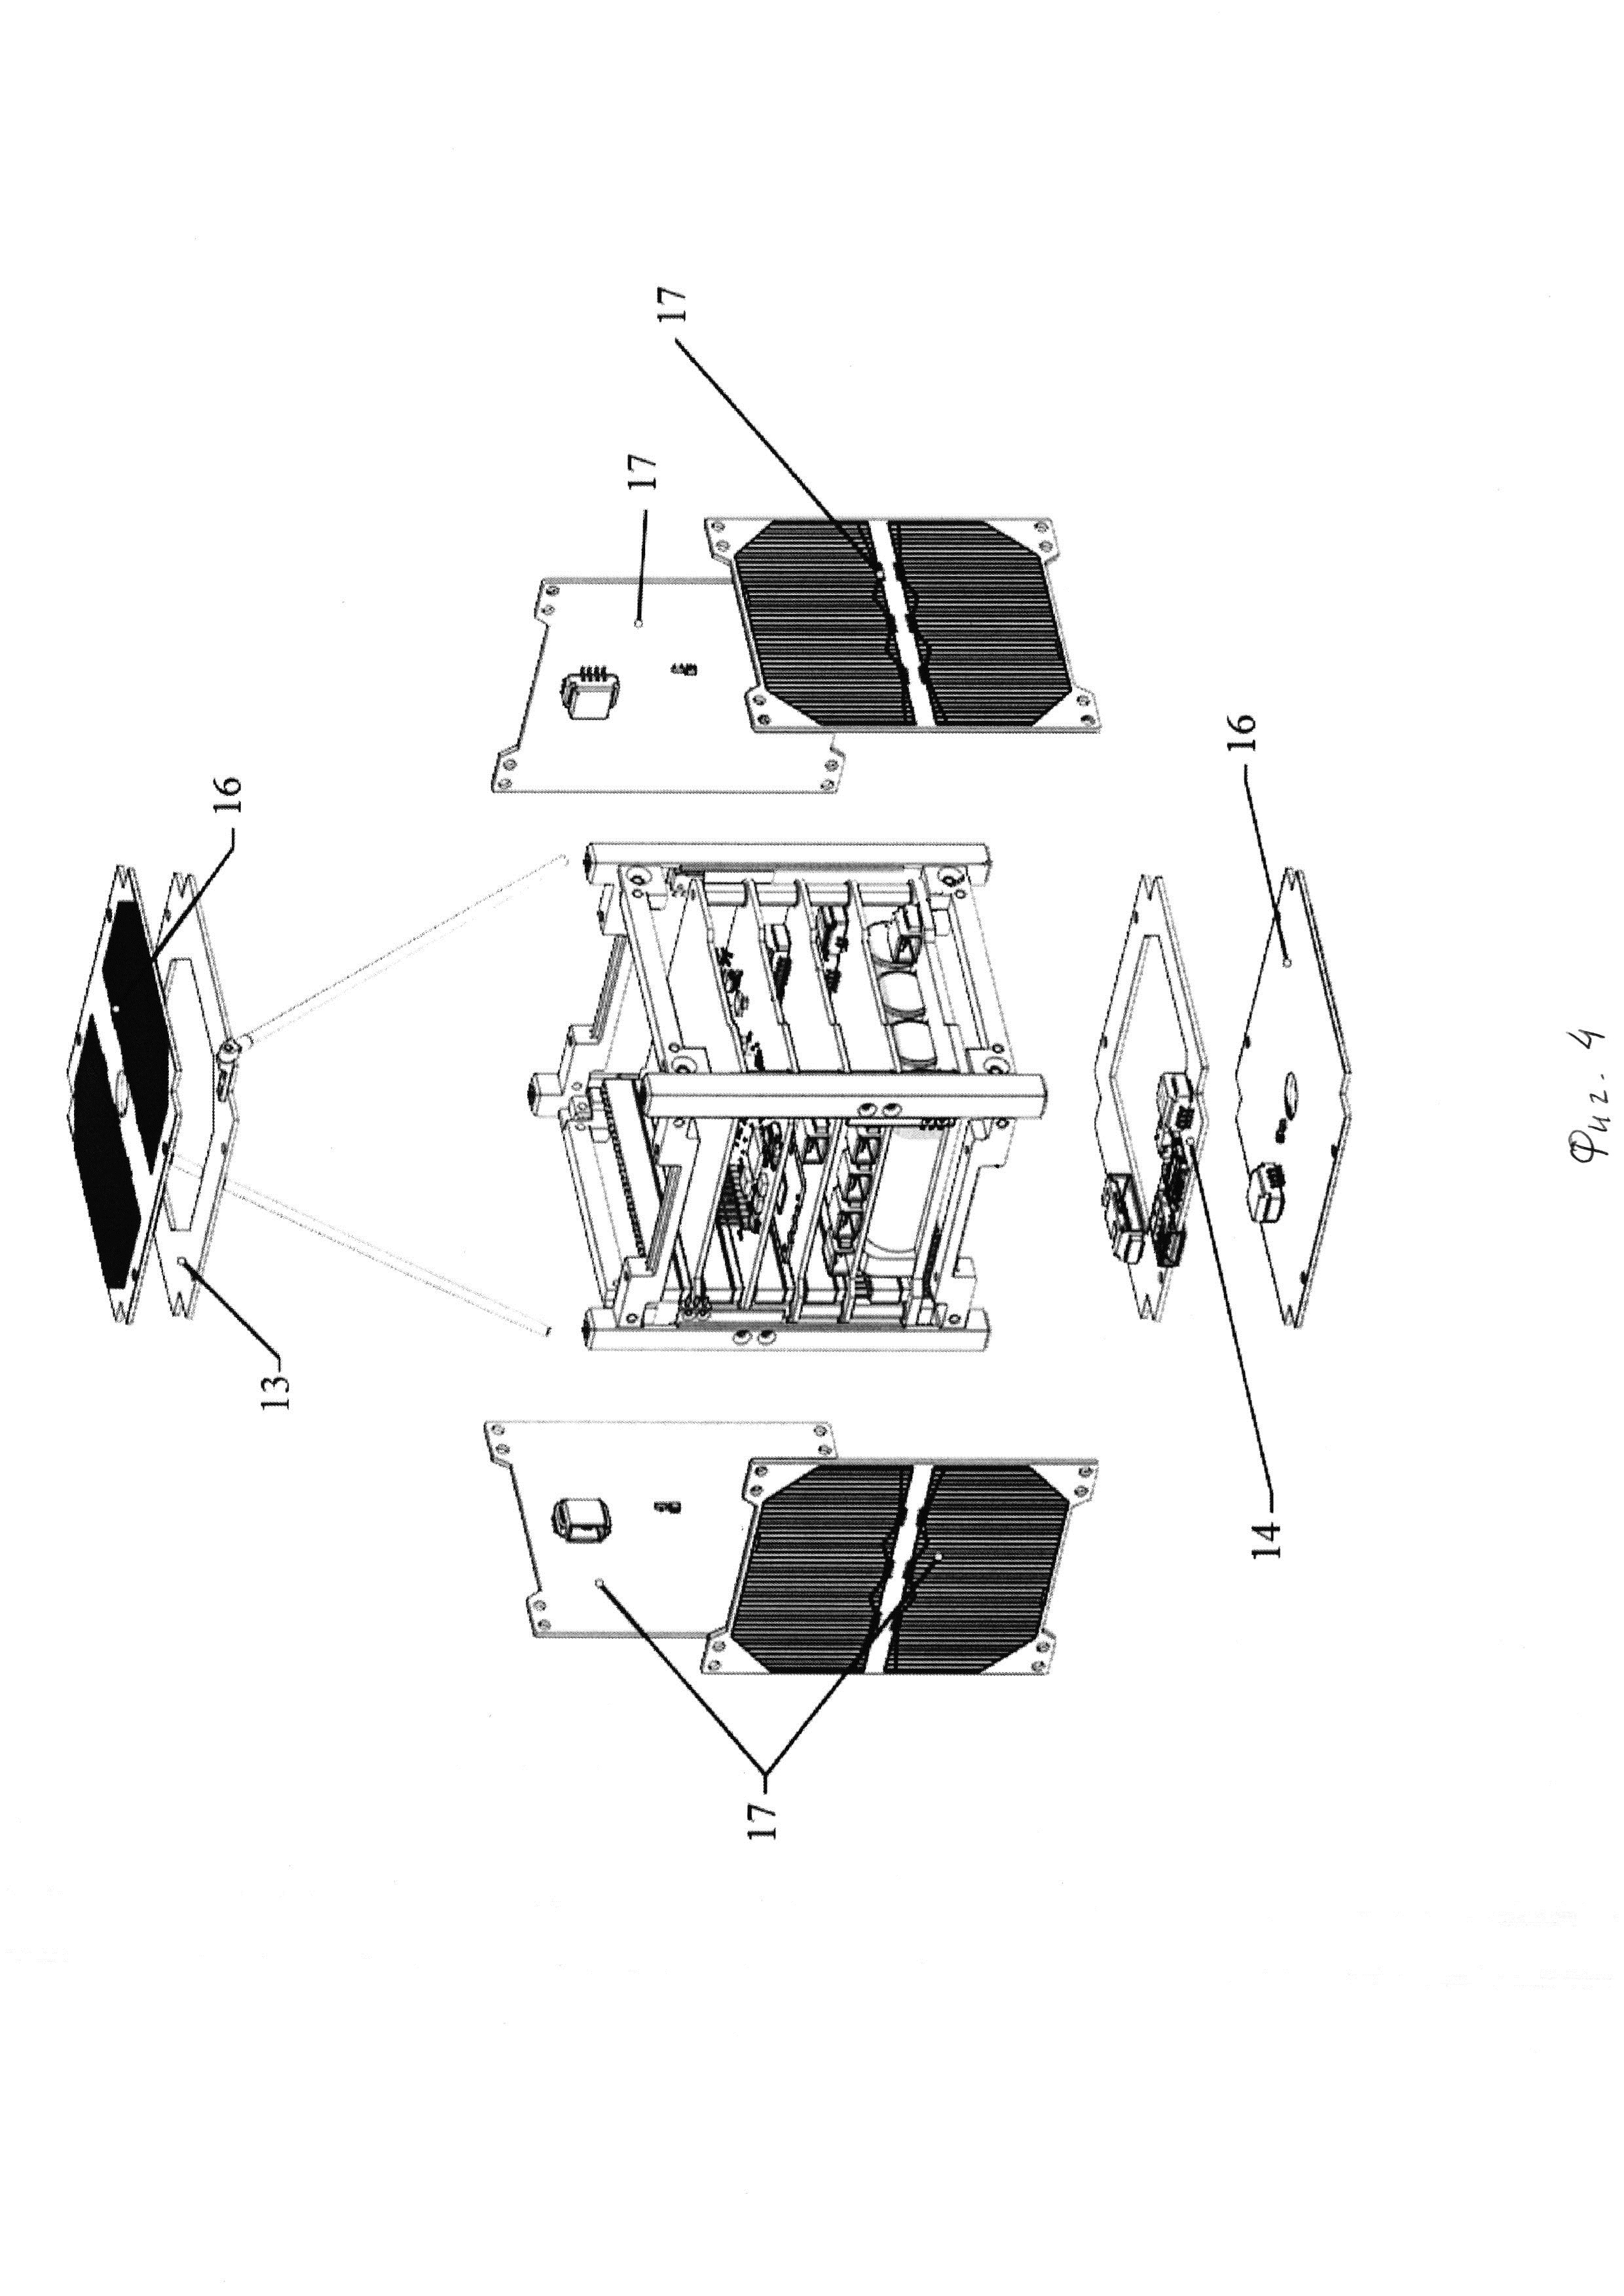 Спутник-конструктор - учебно-демонстрационная модель